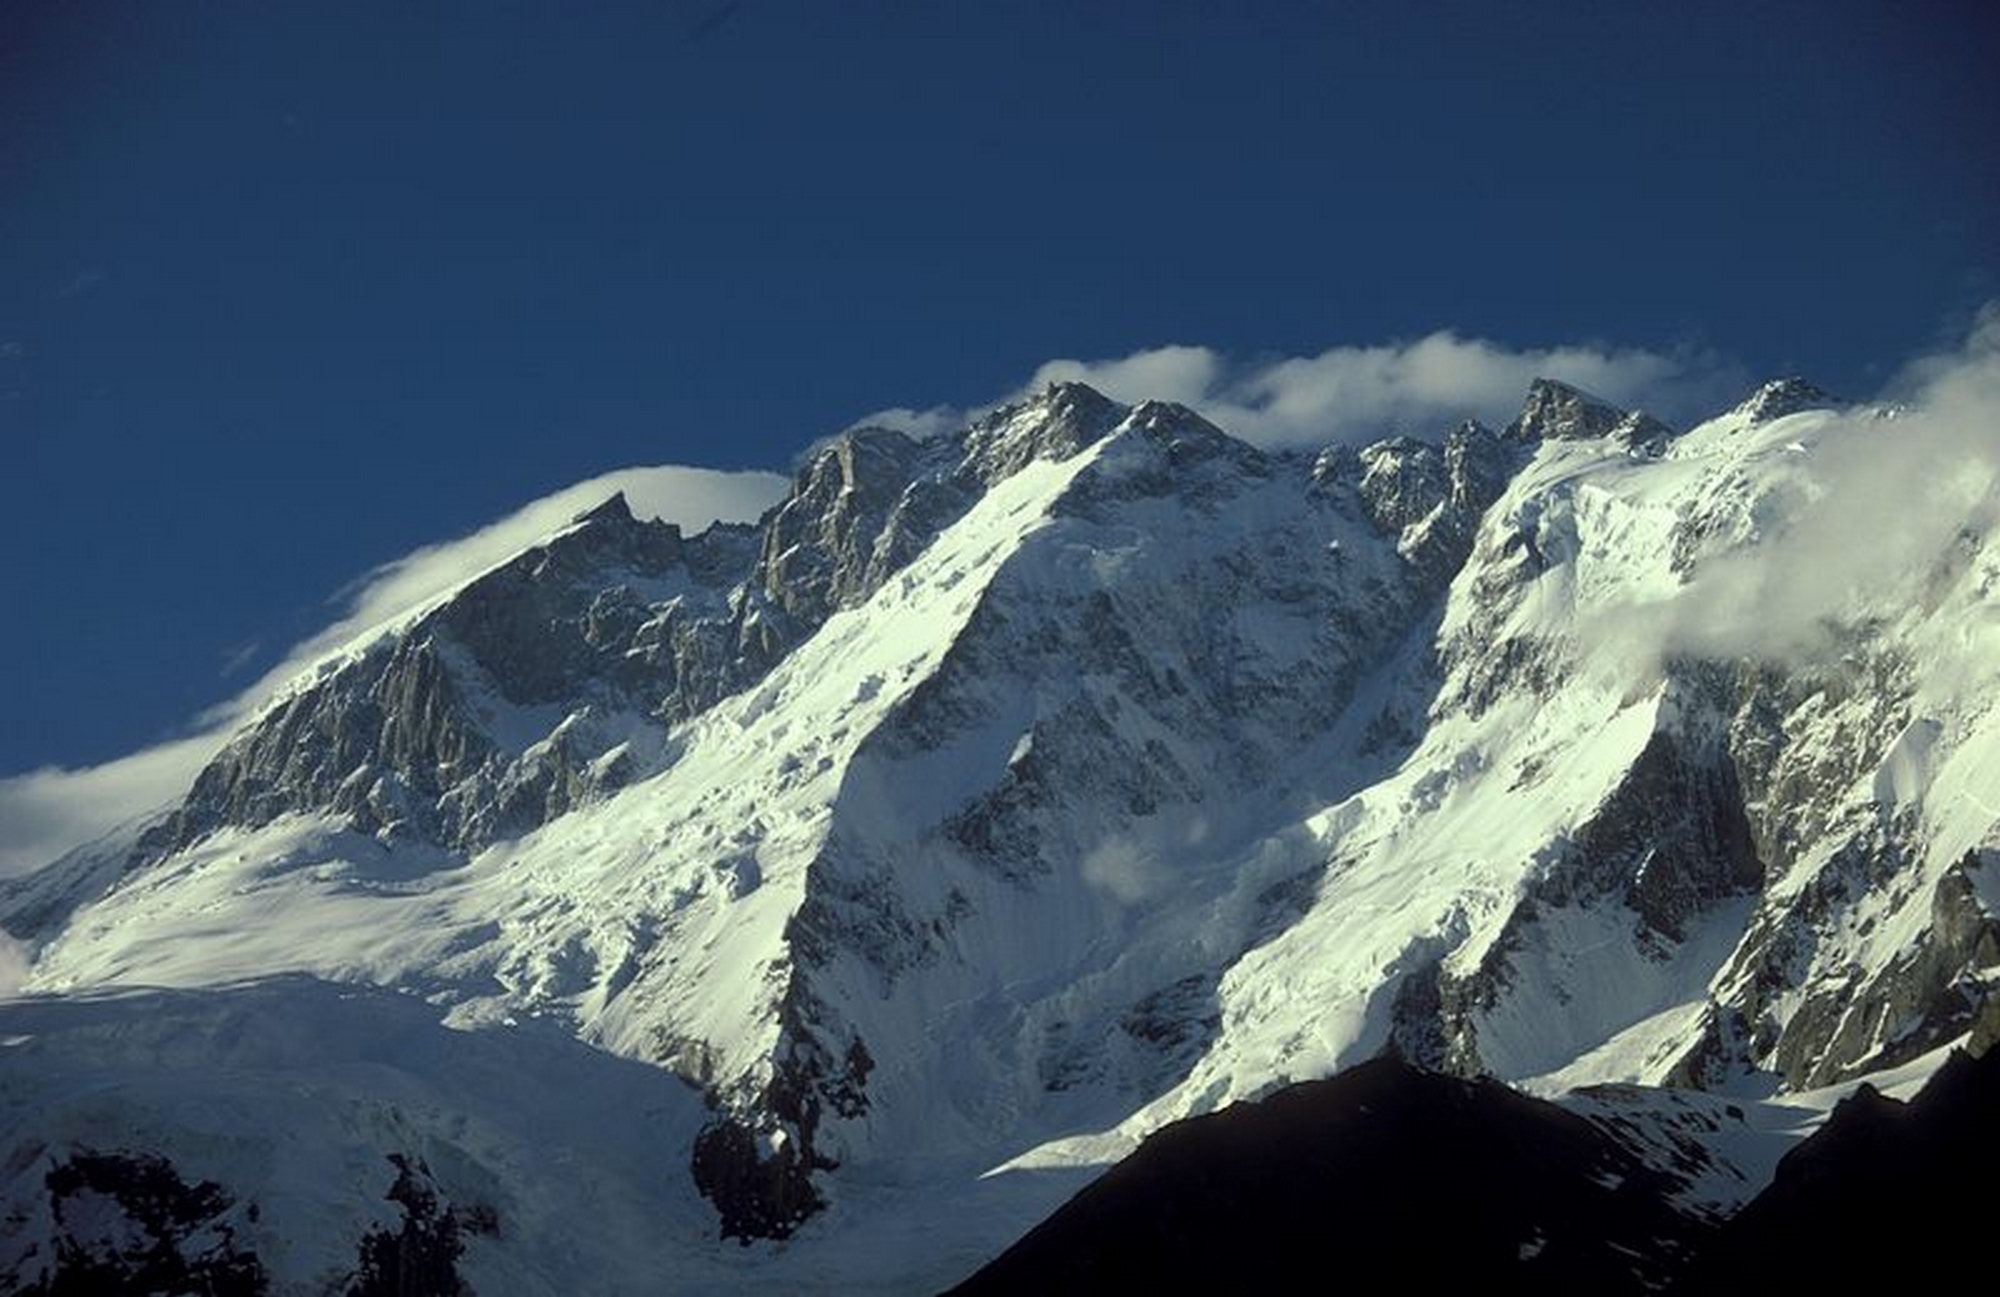 Batura-I Peak 7,785 M Expedition